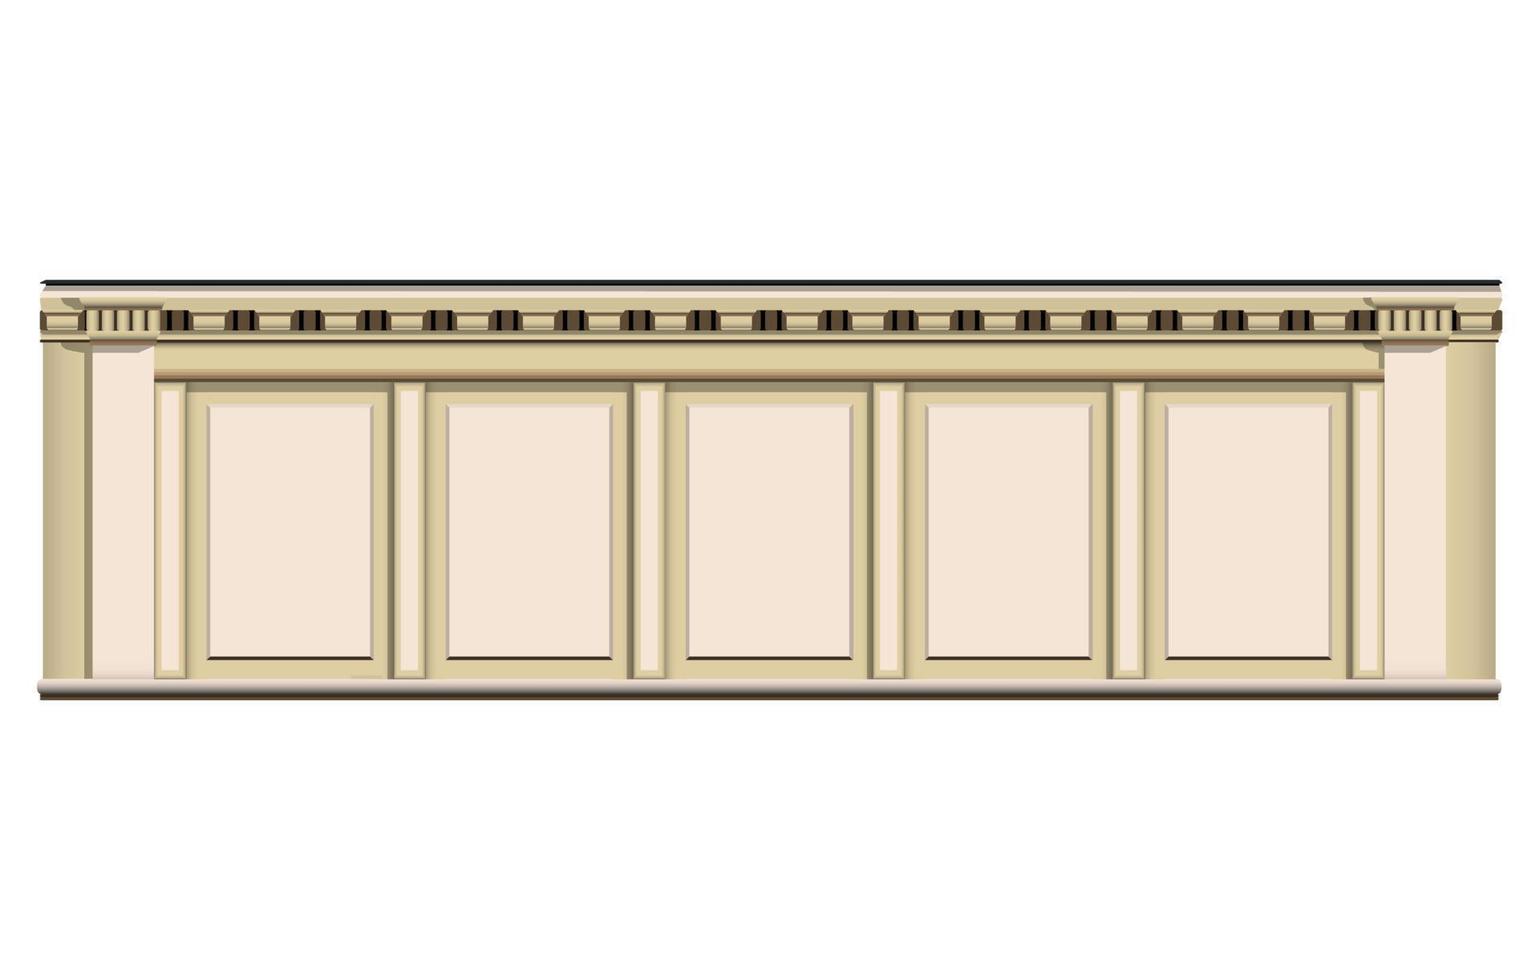 pared y columna de mármol beige en estilo realista. fachada de edificio antiguo. Ilustración de vector colorido aislado sobre fondo blanco.